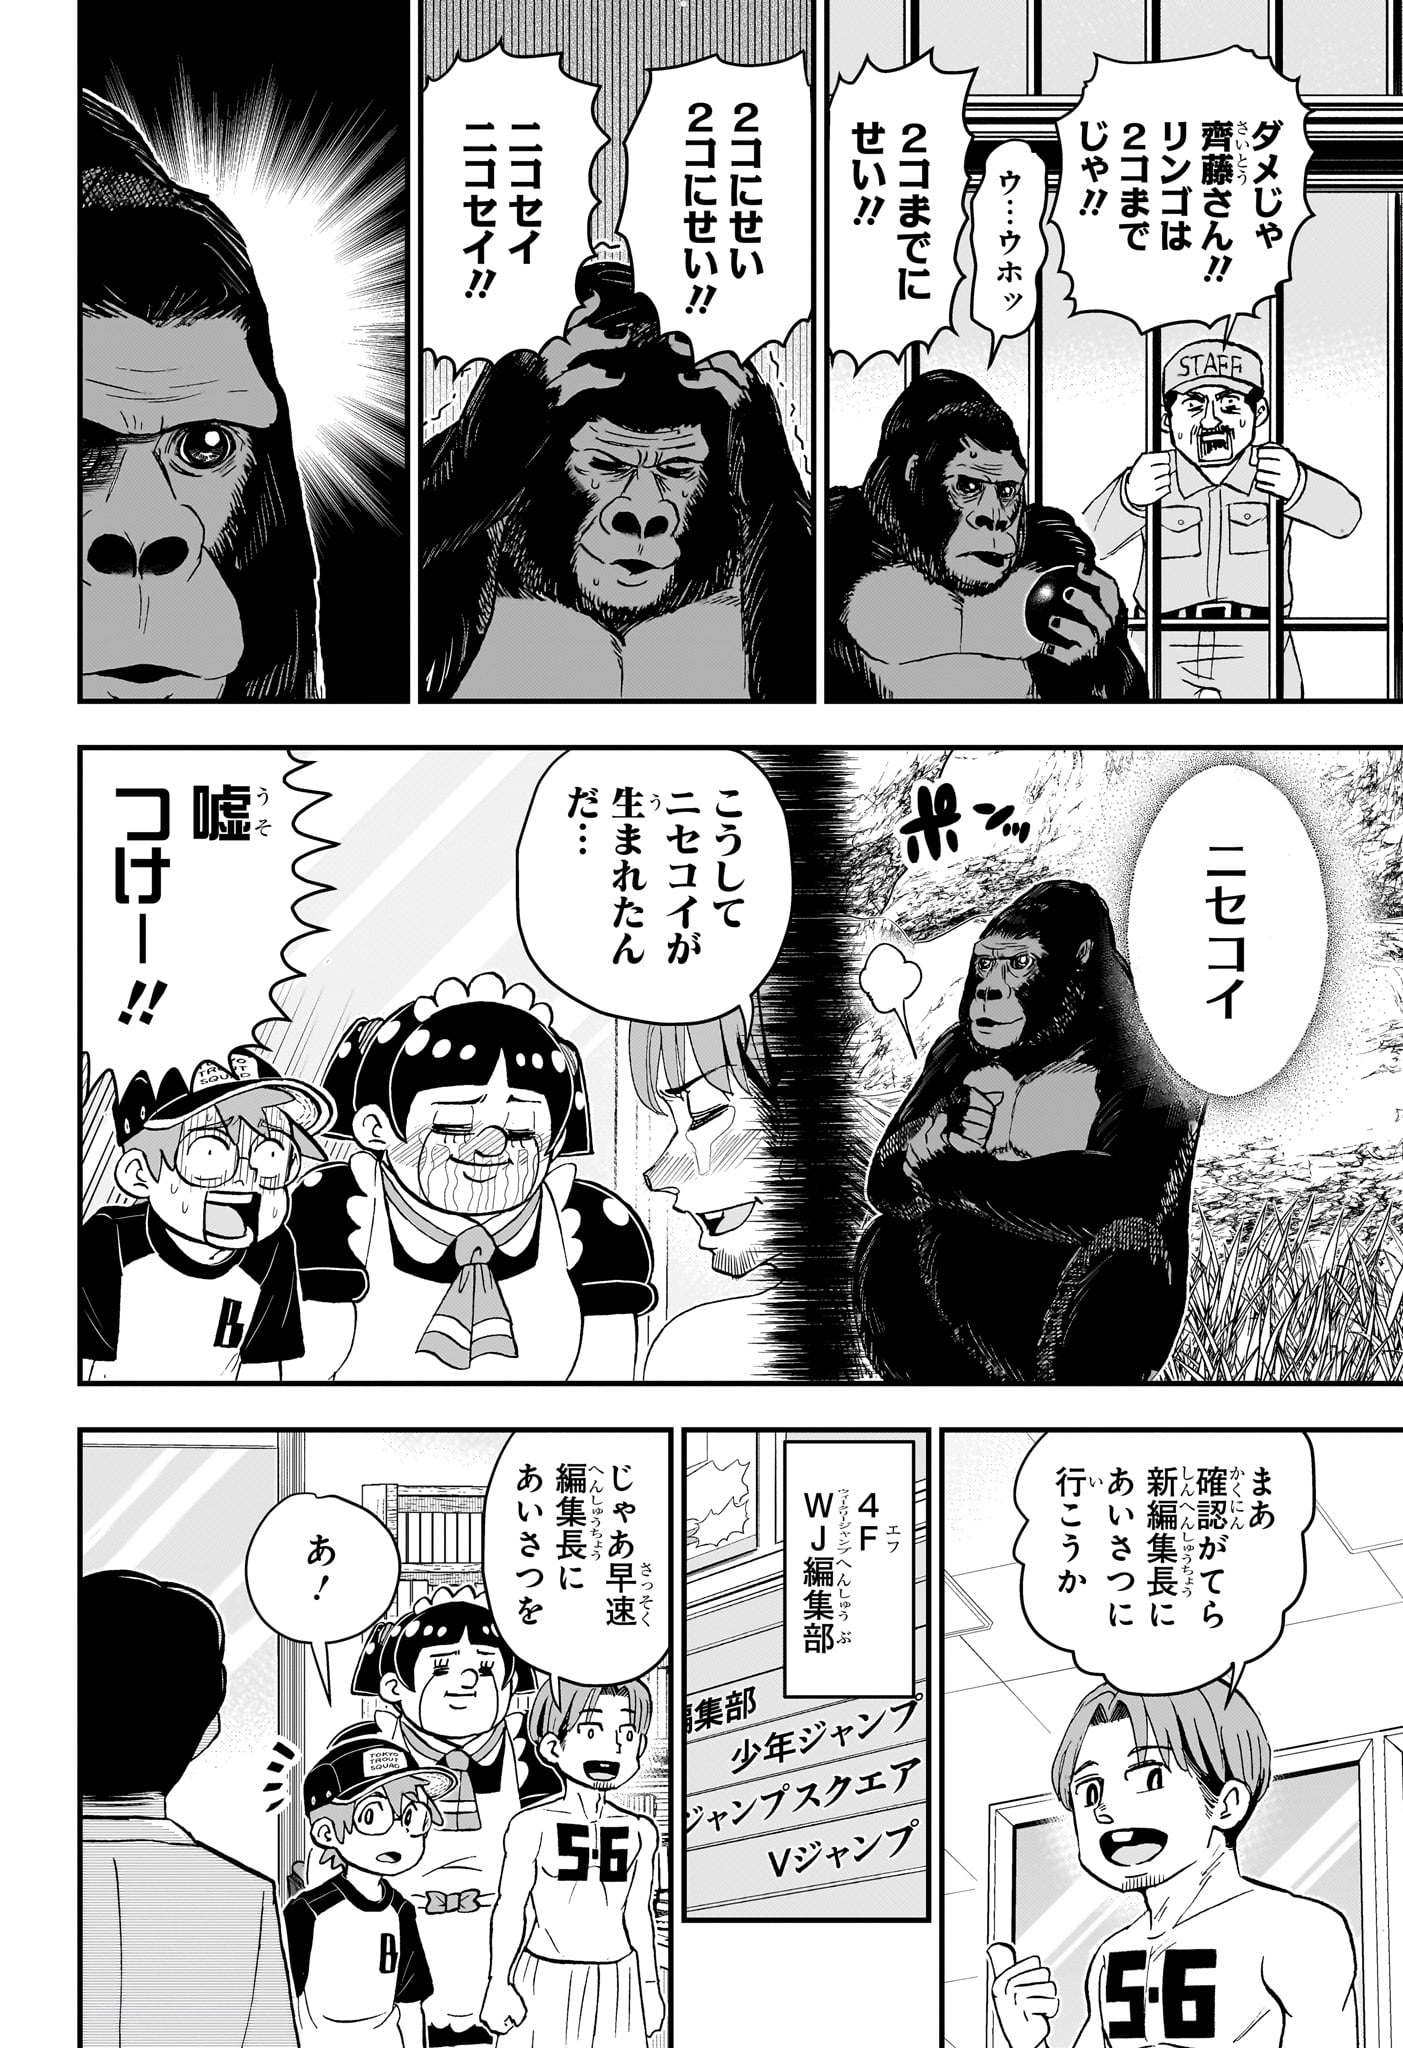 Boku to Roboko - Chapter 194 - Page 6